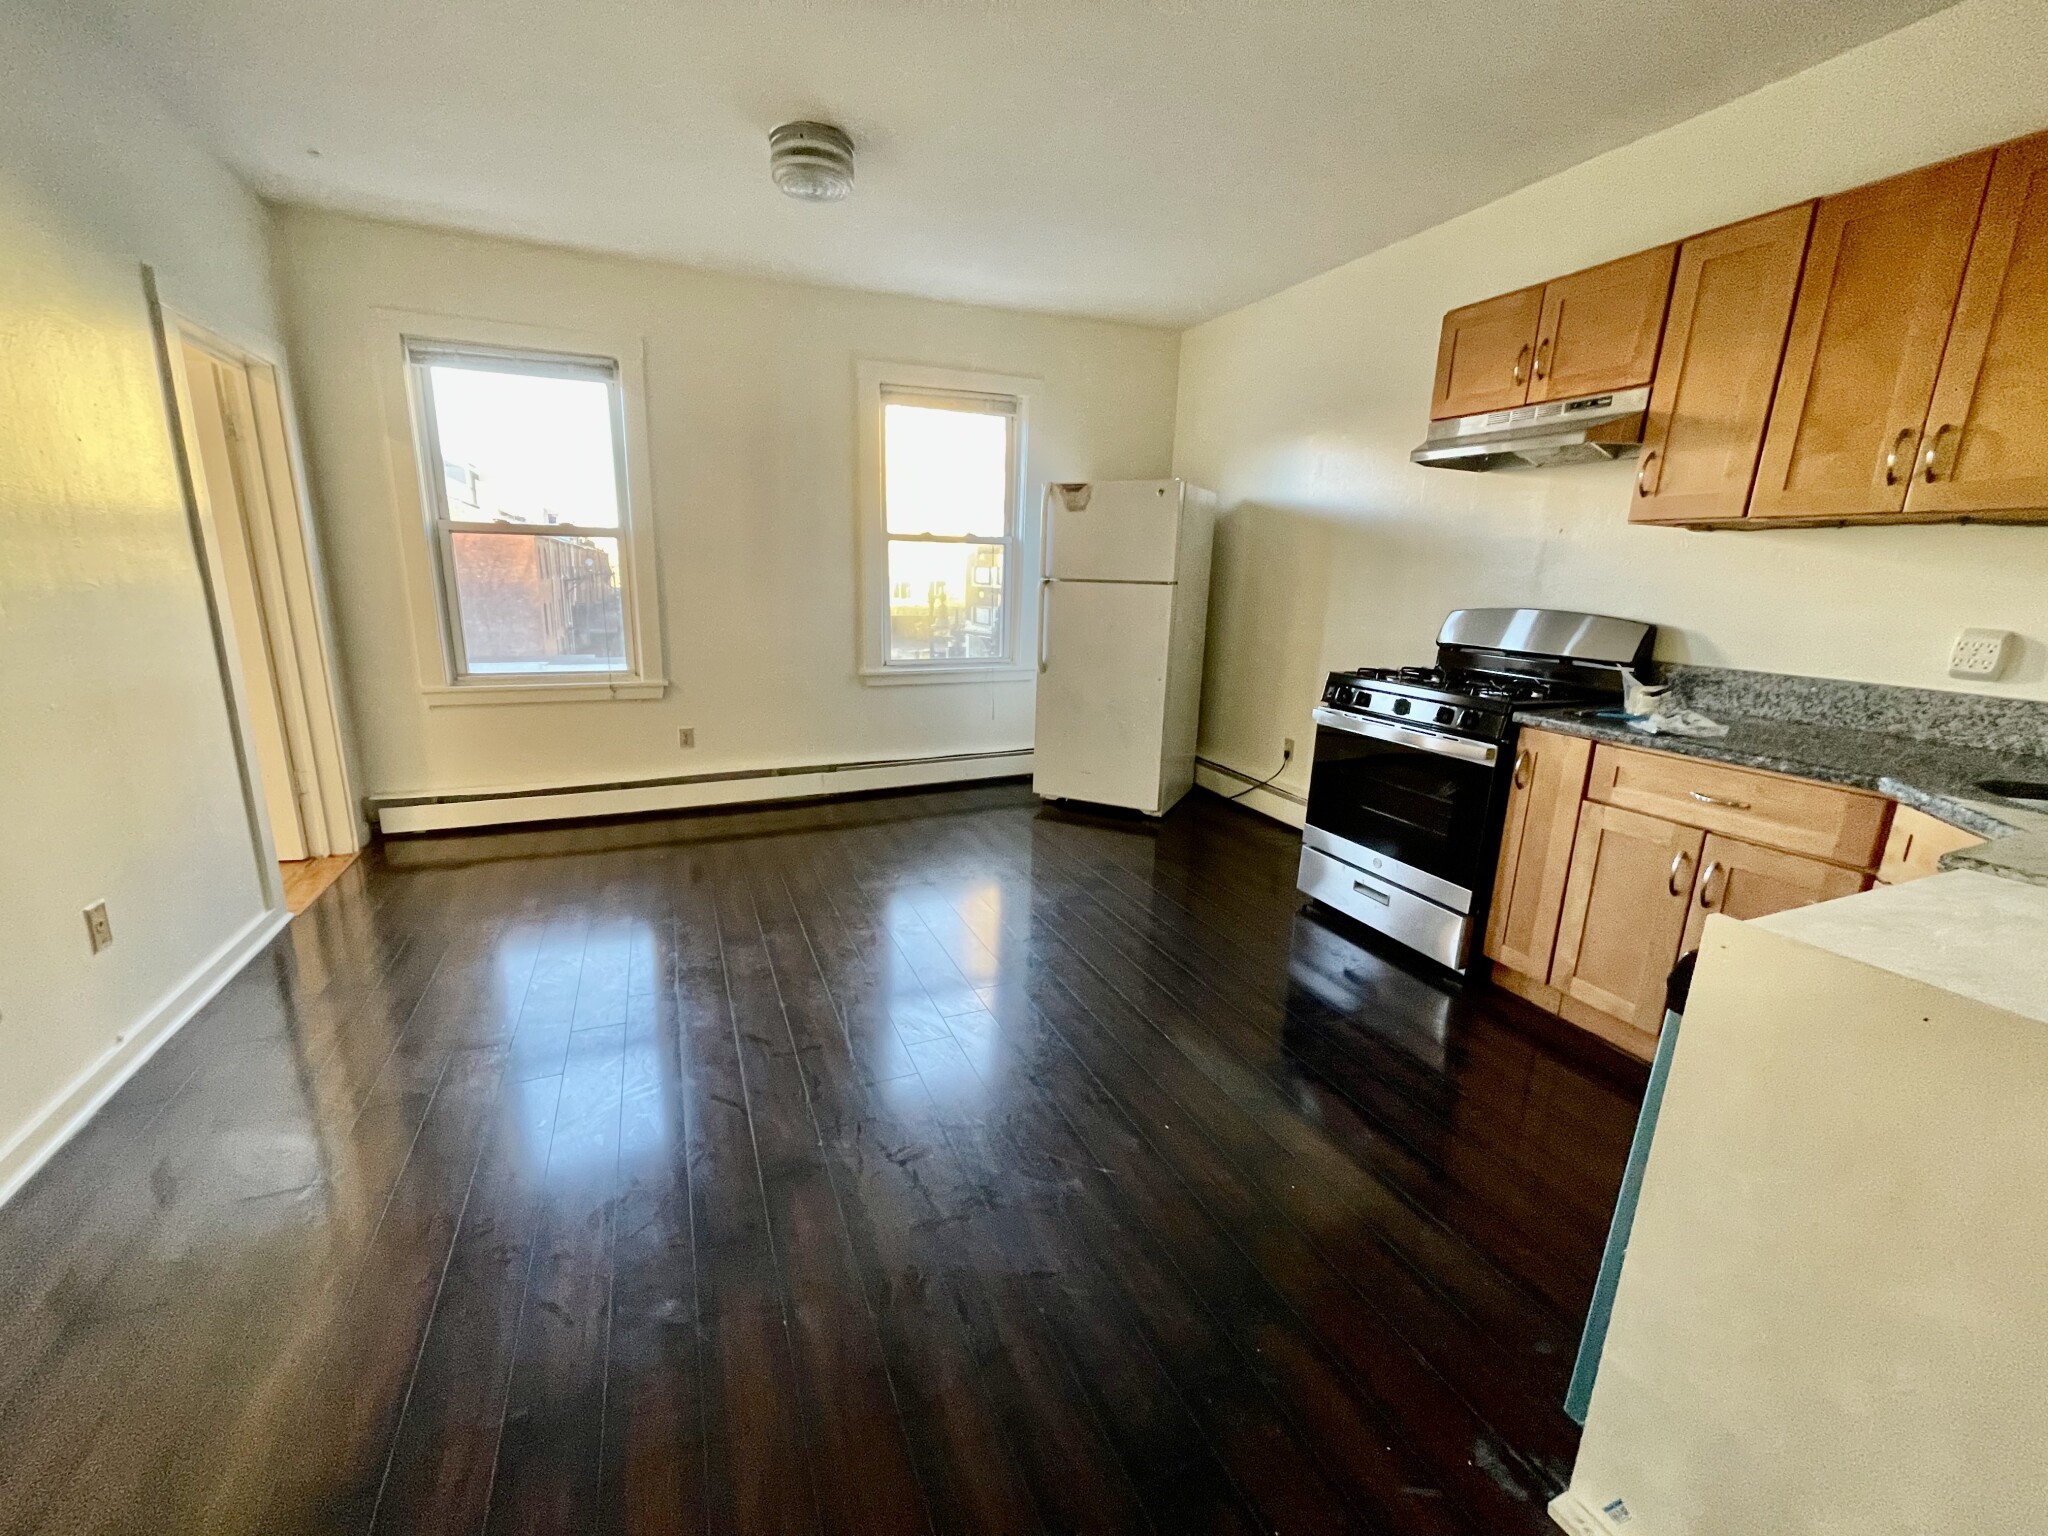 Photos of apartment on Tremont,Boston MA 02120